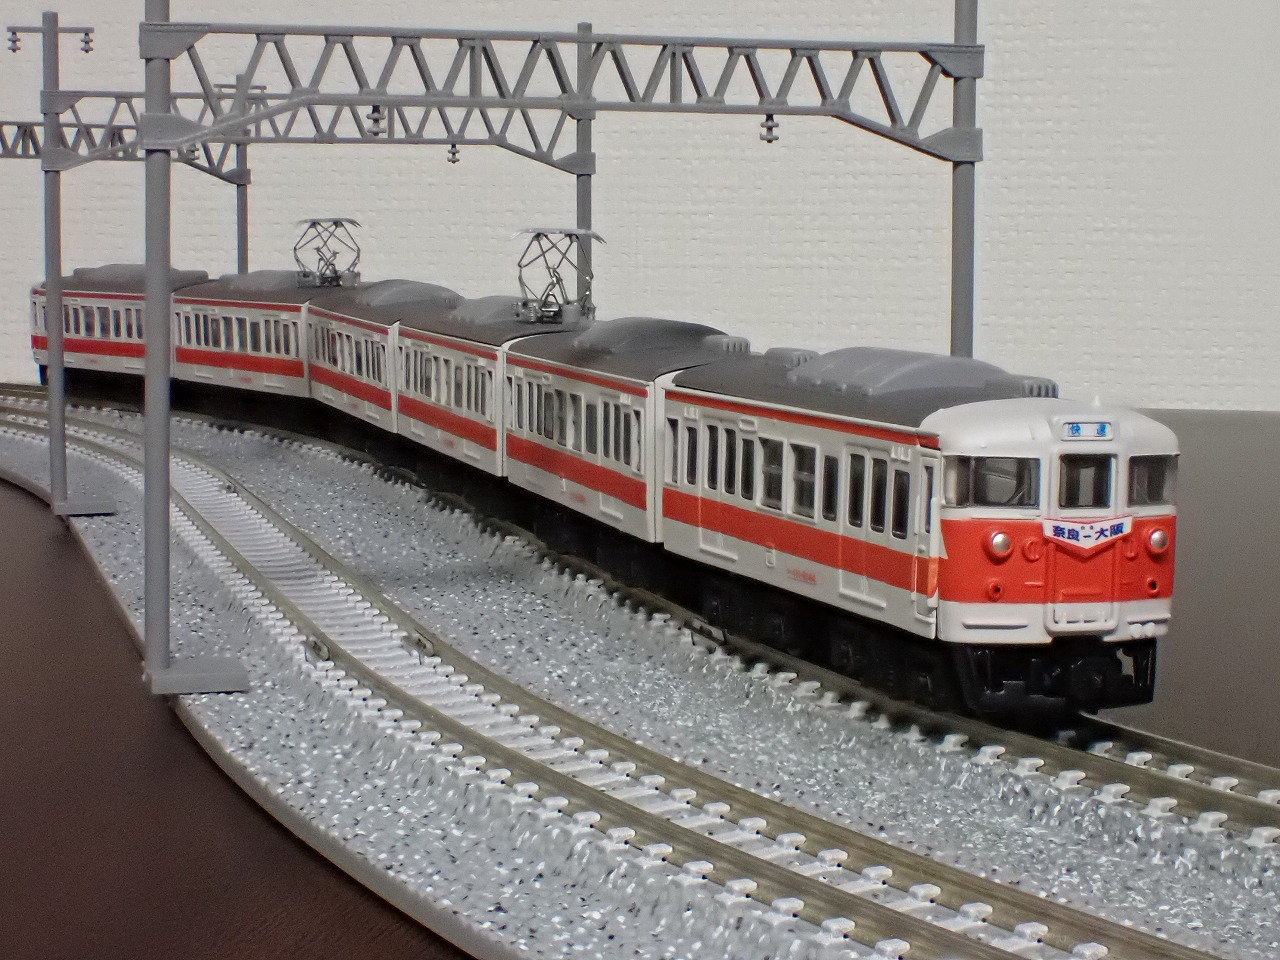 Bトレイン『JR 113系 湘南色』4両 - 鉄道模型